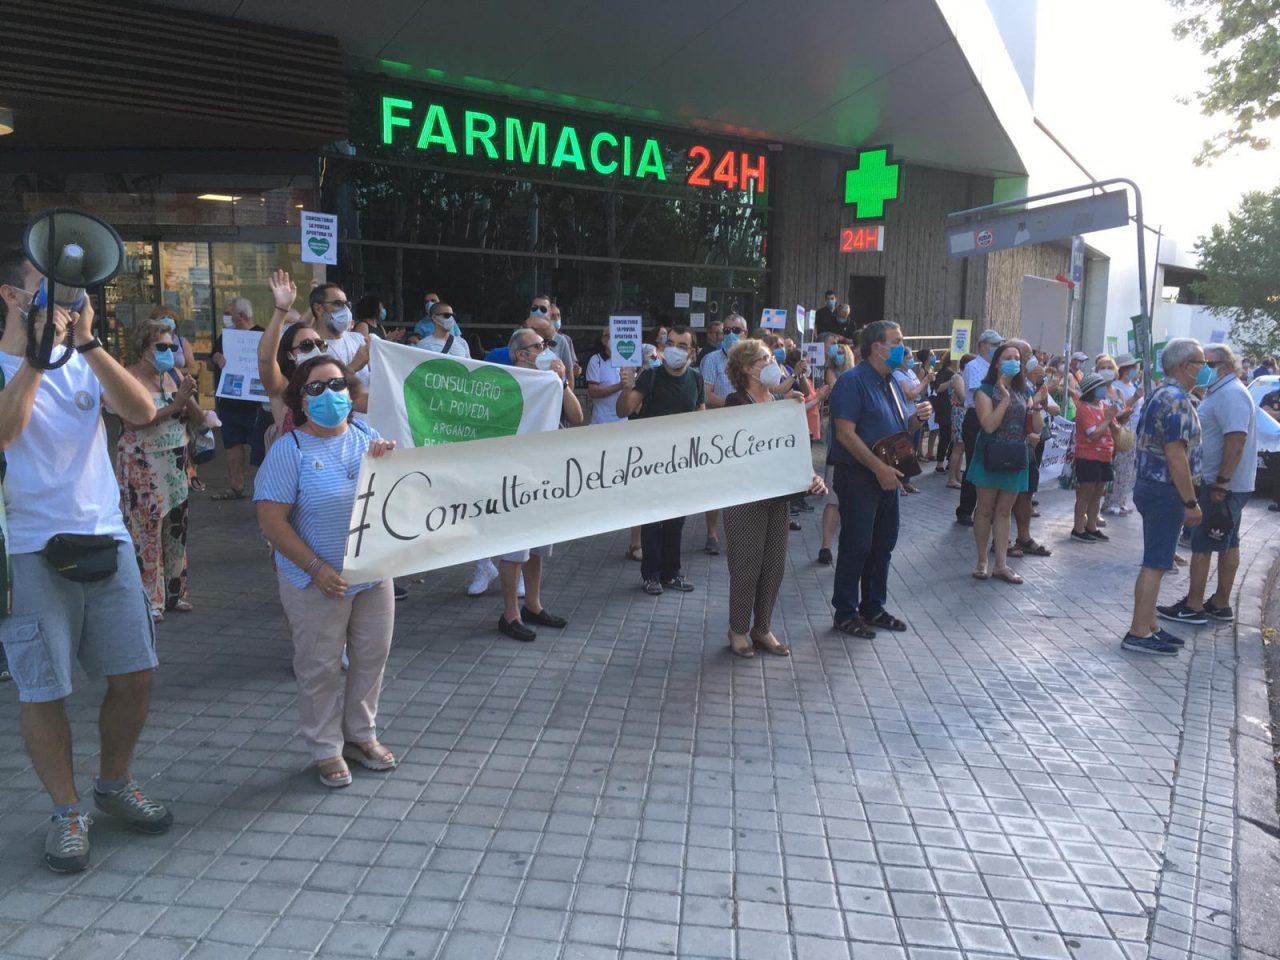 La vecindad de La Poveda intensifica sus protestas por la reapertura de su consultorio médico